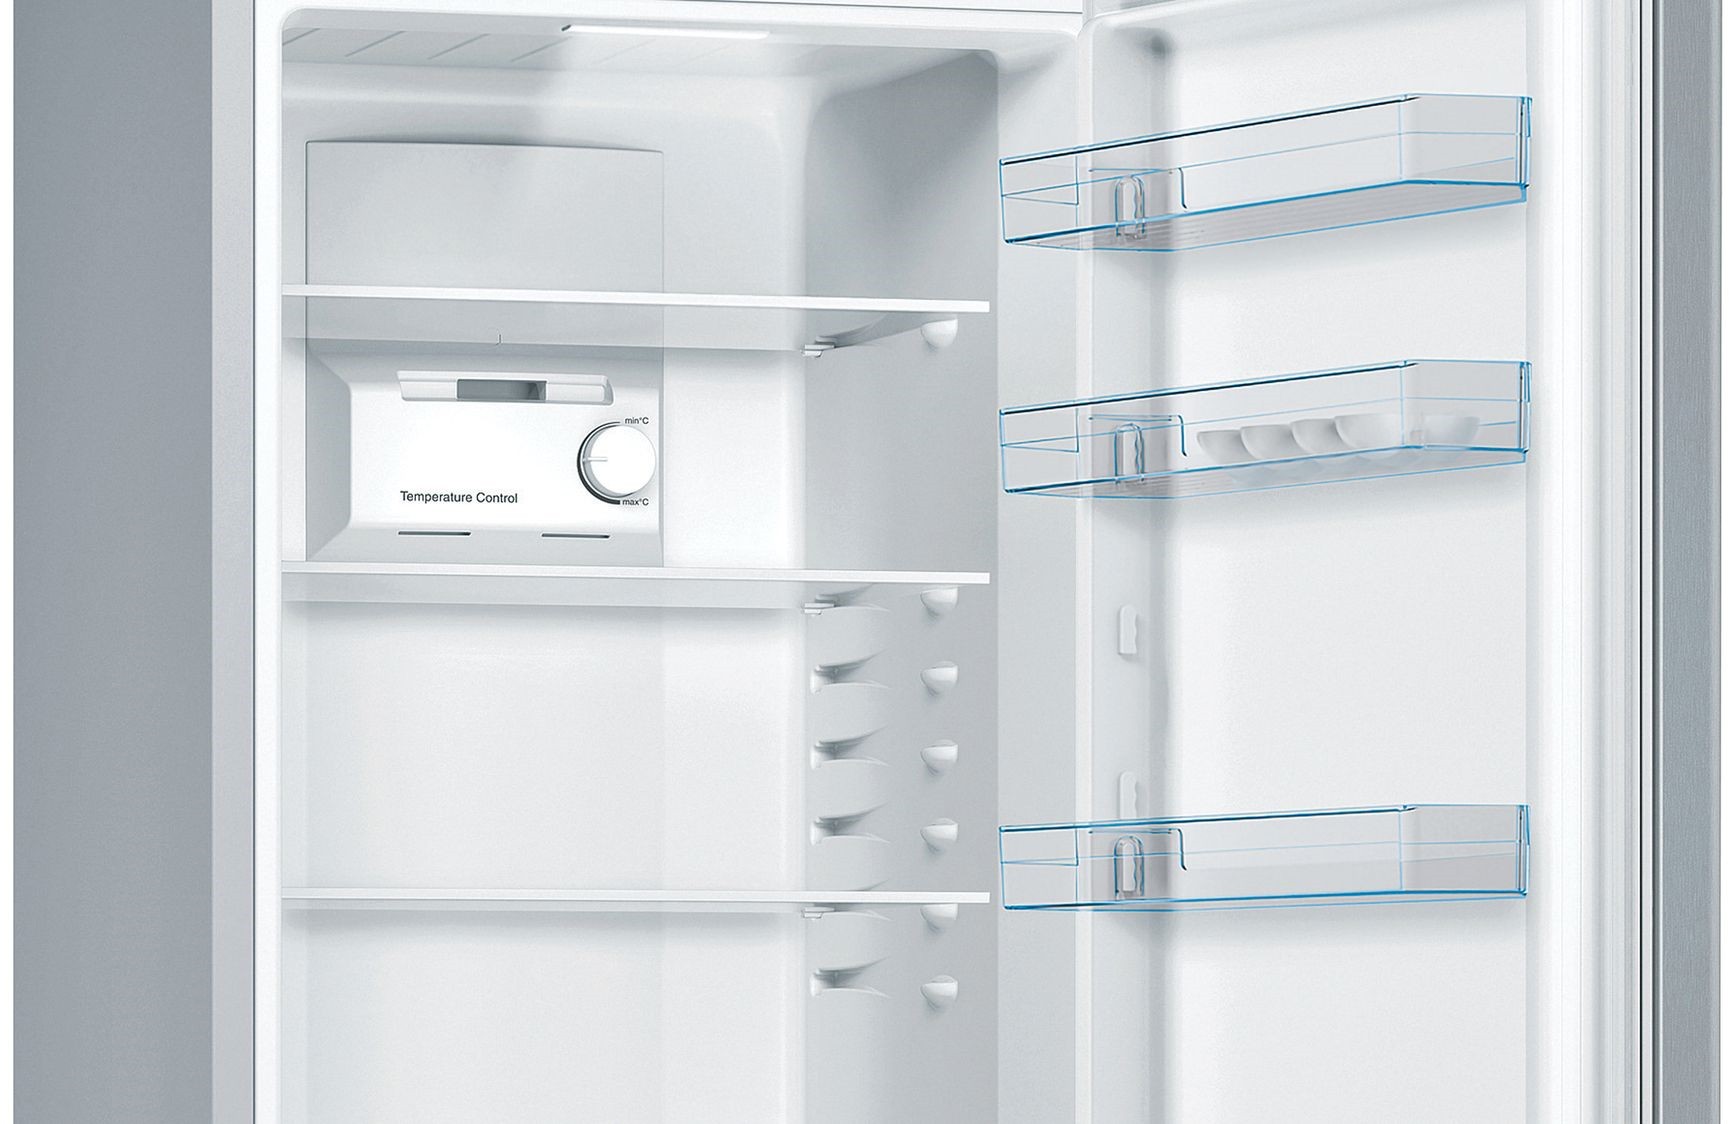 BOSCH Réfrigérateur congélateur bas Série 2 NoFrost MultiAirflow 302L Inox - KGN36NLEA